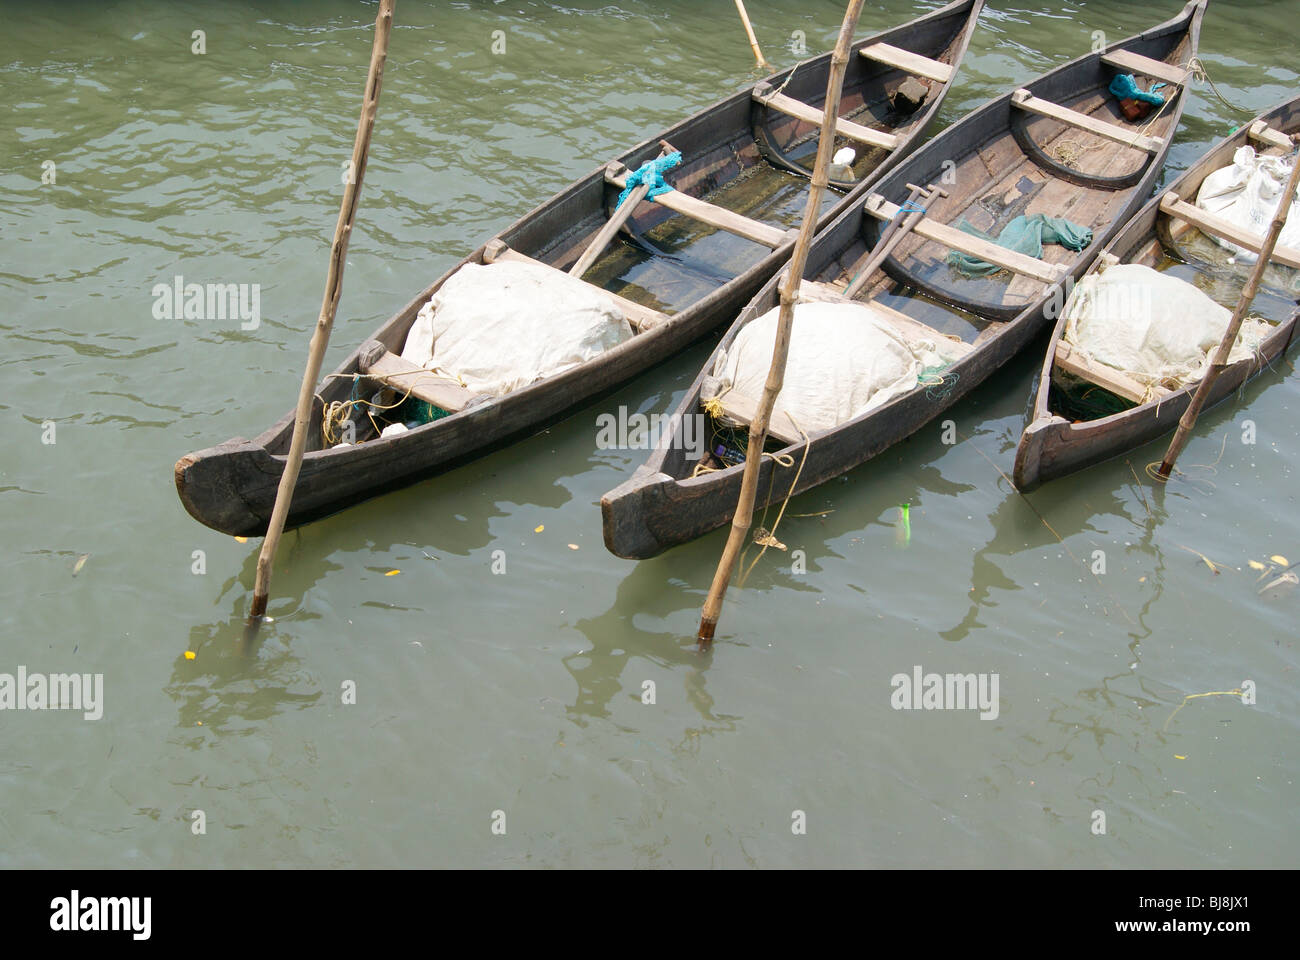 Les petits bateaux de pêcheurs canot en bois disposées et ancrée dans une manière élégante près de Cochin Port,mer,Kerala Inde Banque D'Images